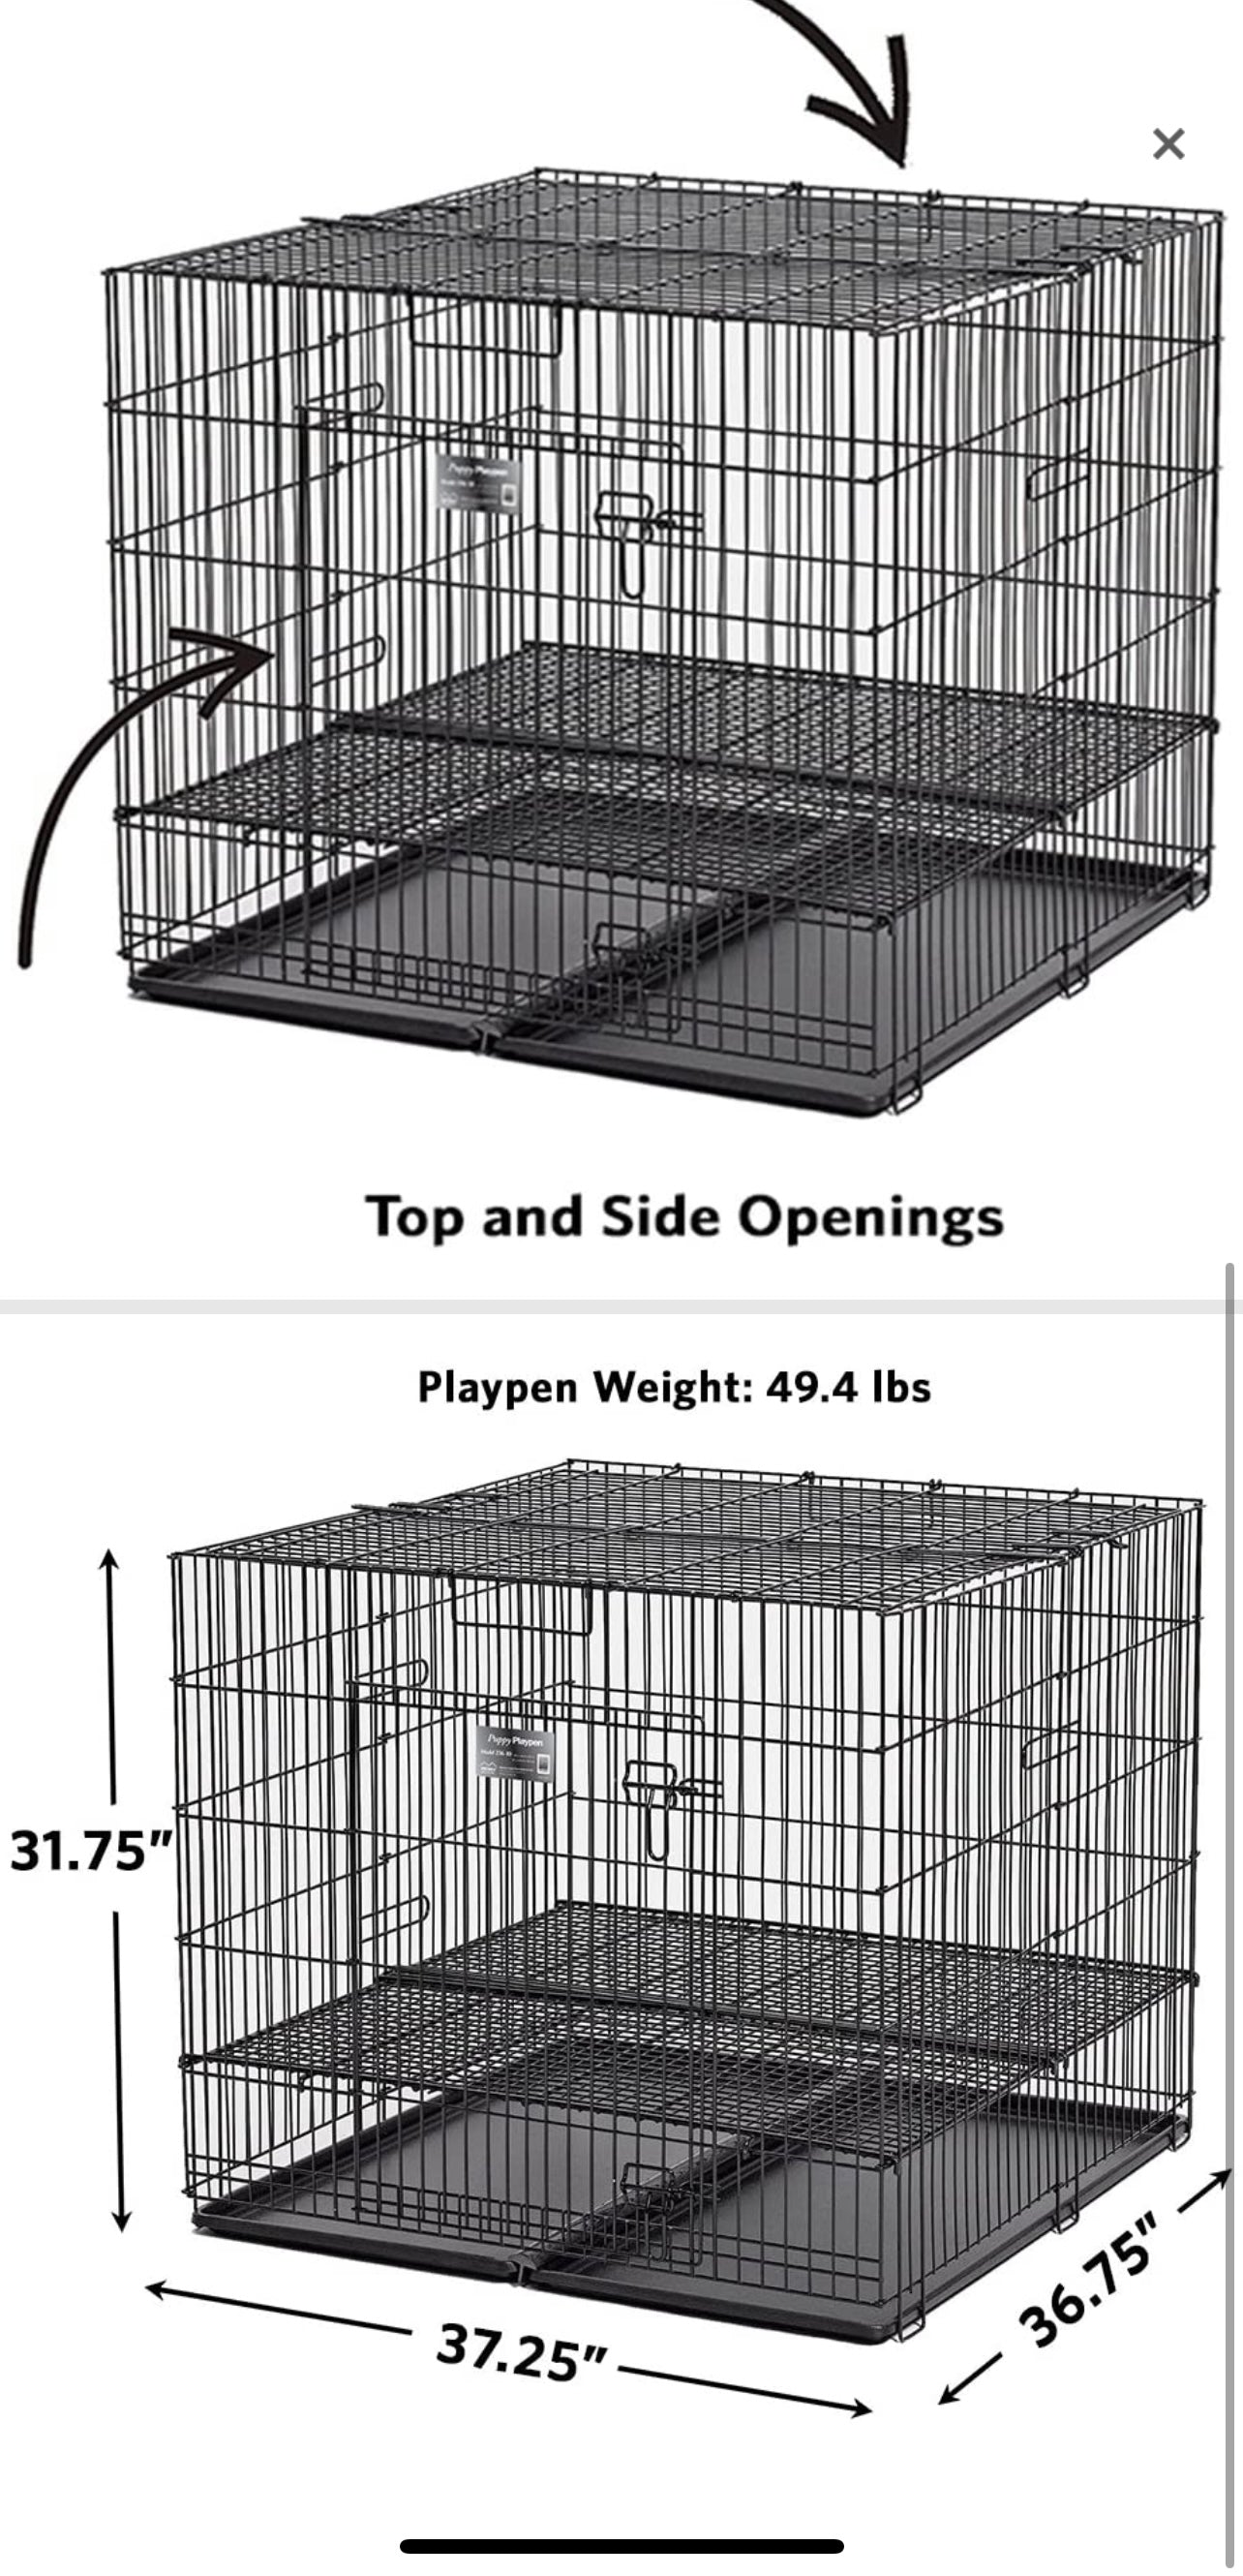 Puppy playpen cage